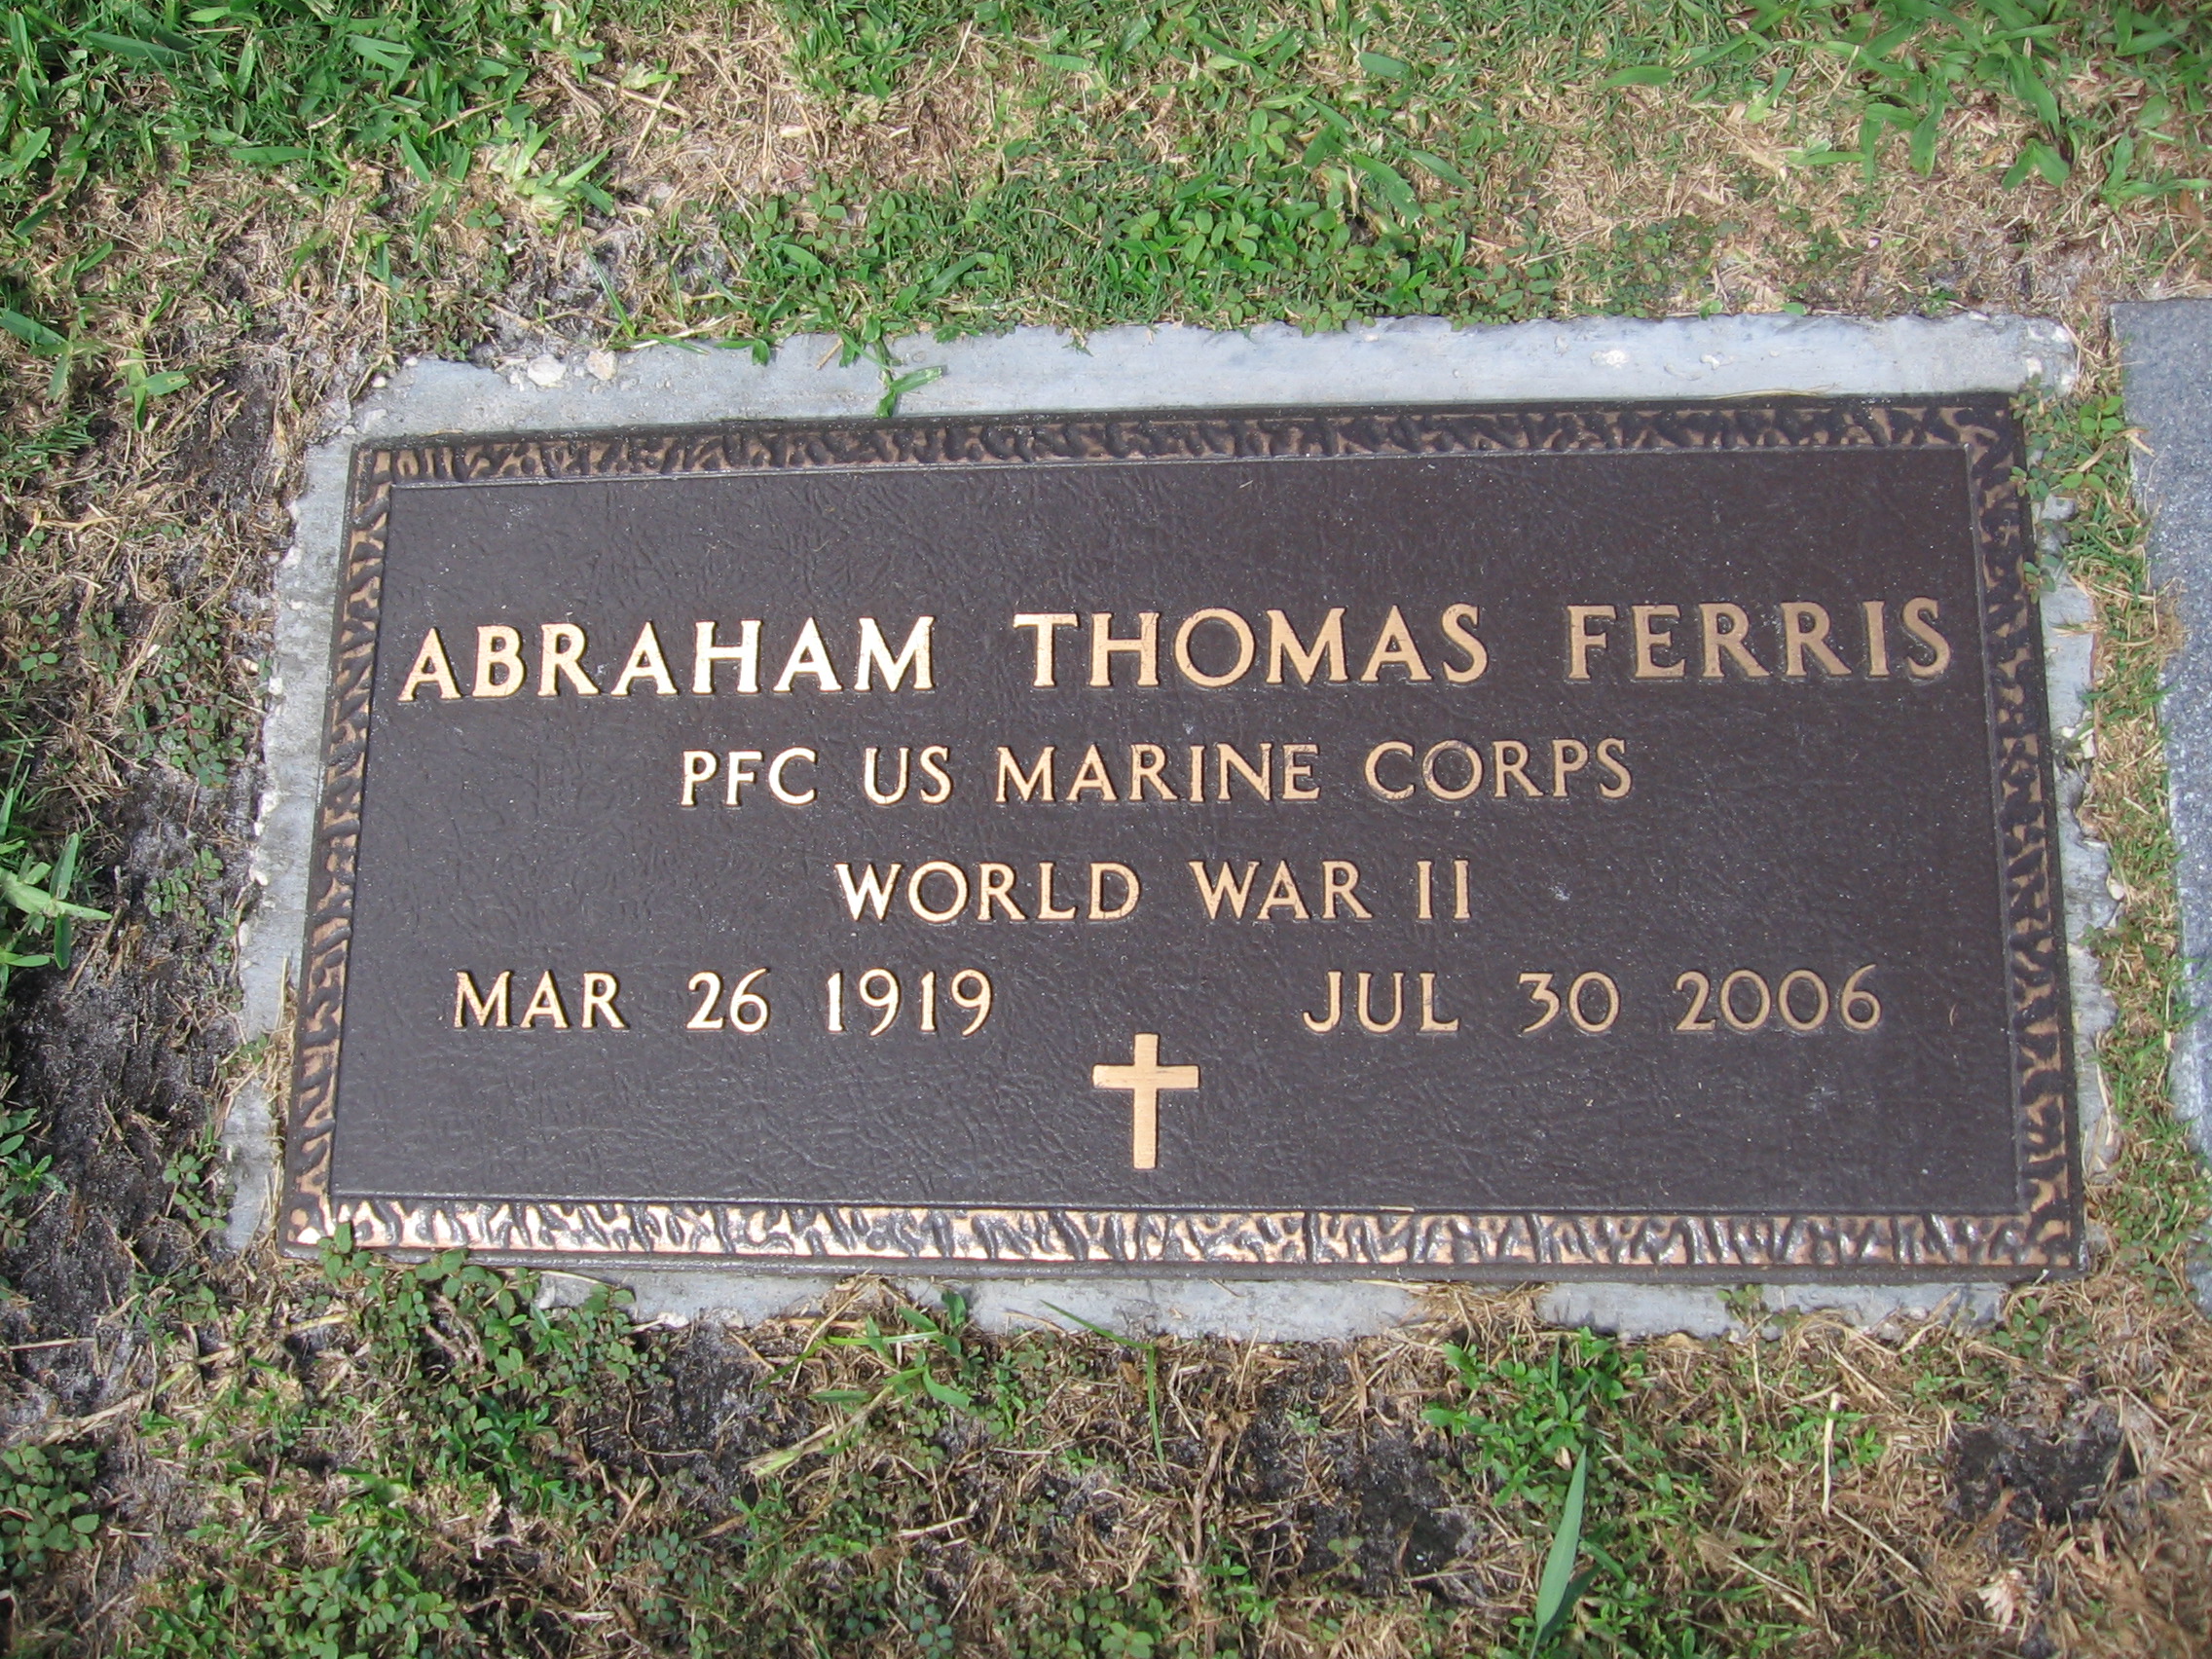 PFC Abraham Thomas Ferris